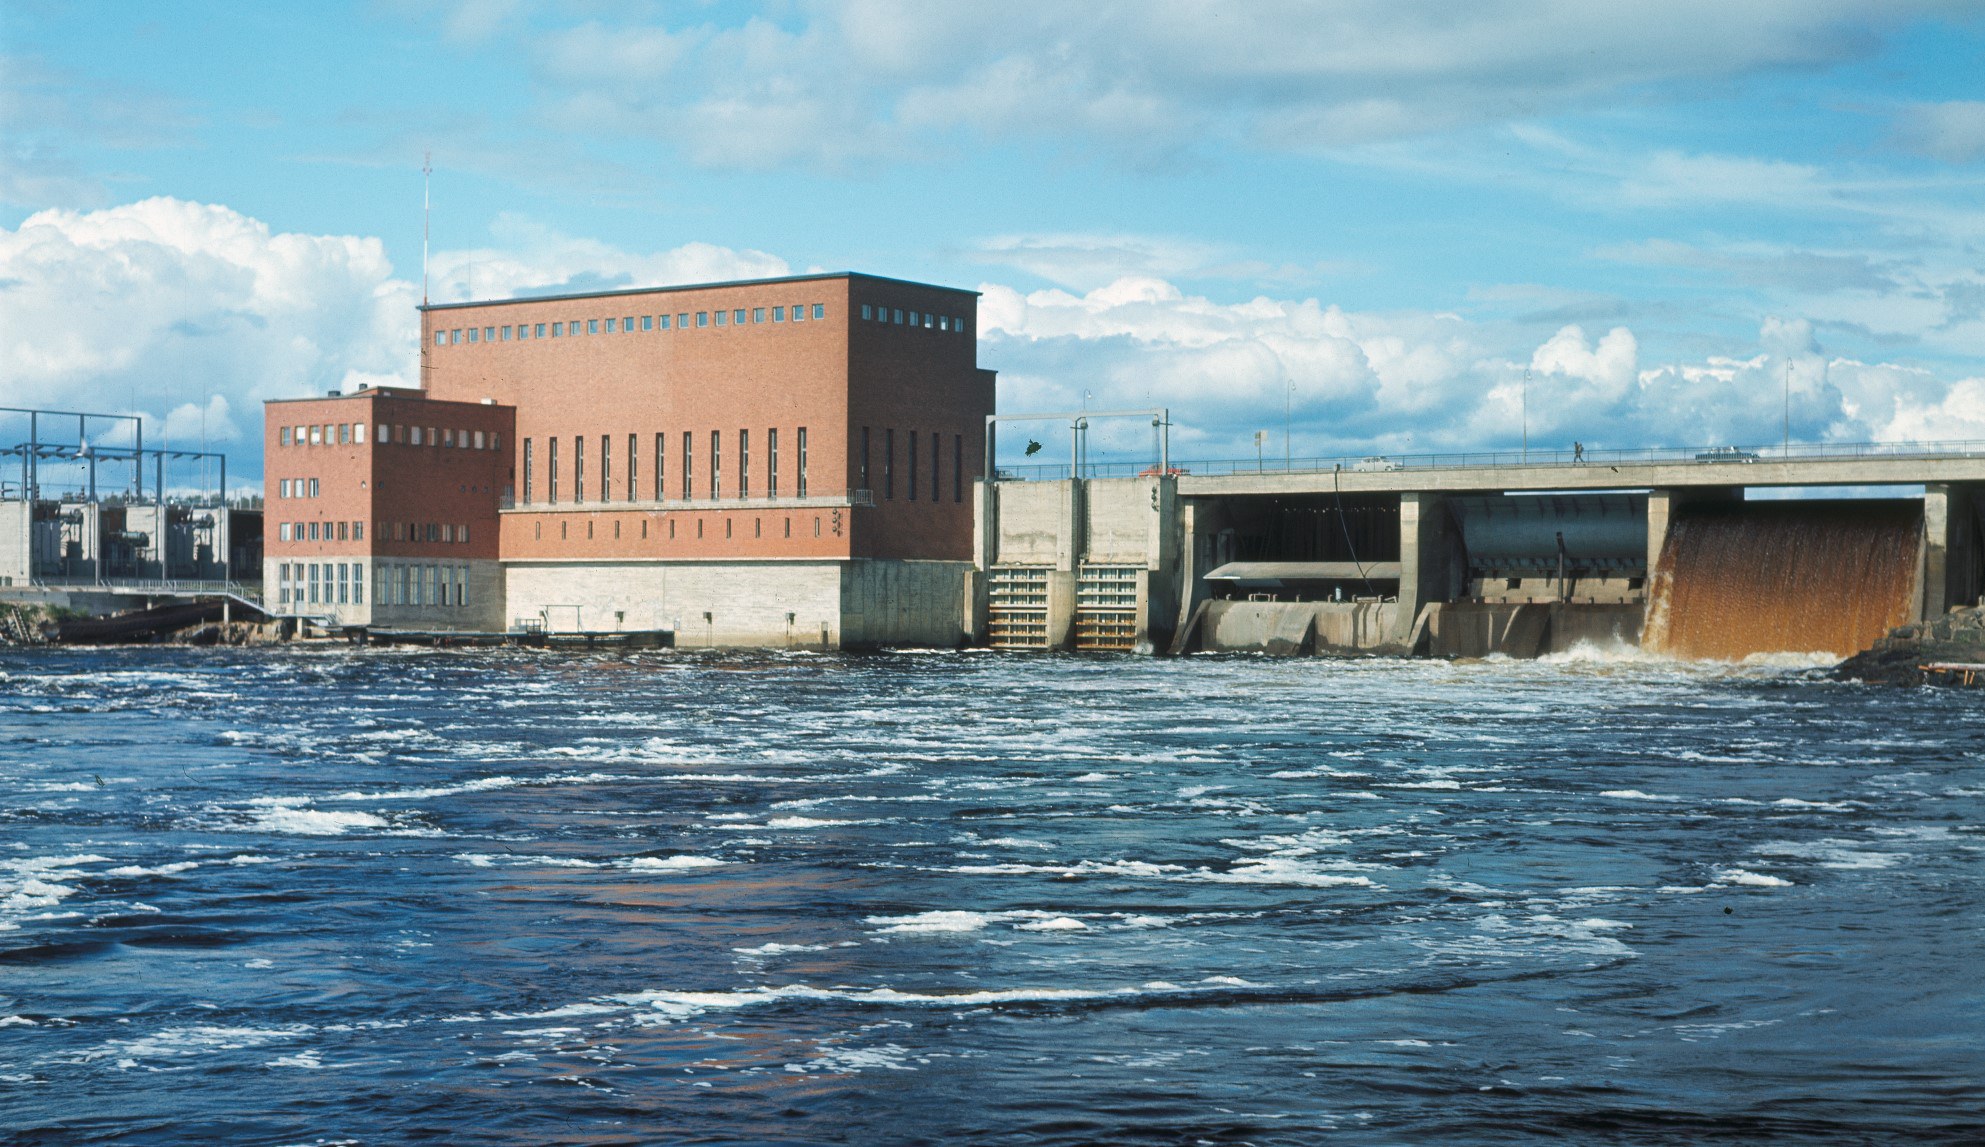 Yleiskuva voimalaitoksesta. Vasemmalla muuntajakenttää, keskellä punatiilinen voimalaitosrakennus, oikealla betonisia patorakenteita sulkuportteineen. Kuvan etualalla alaveden virtauksia.